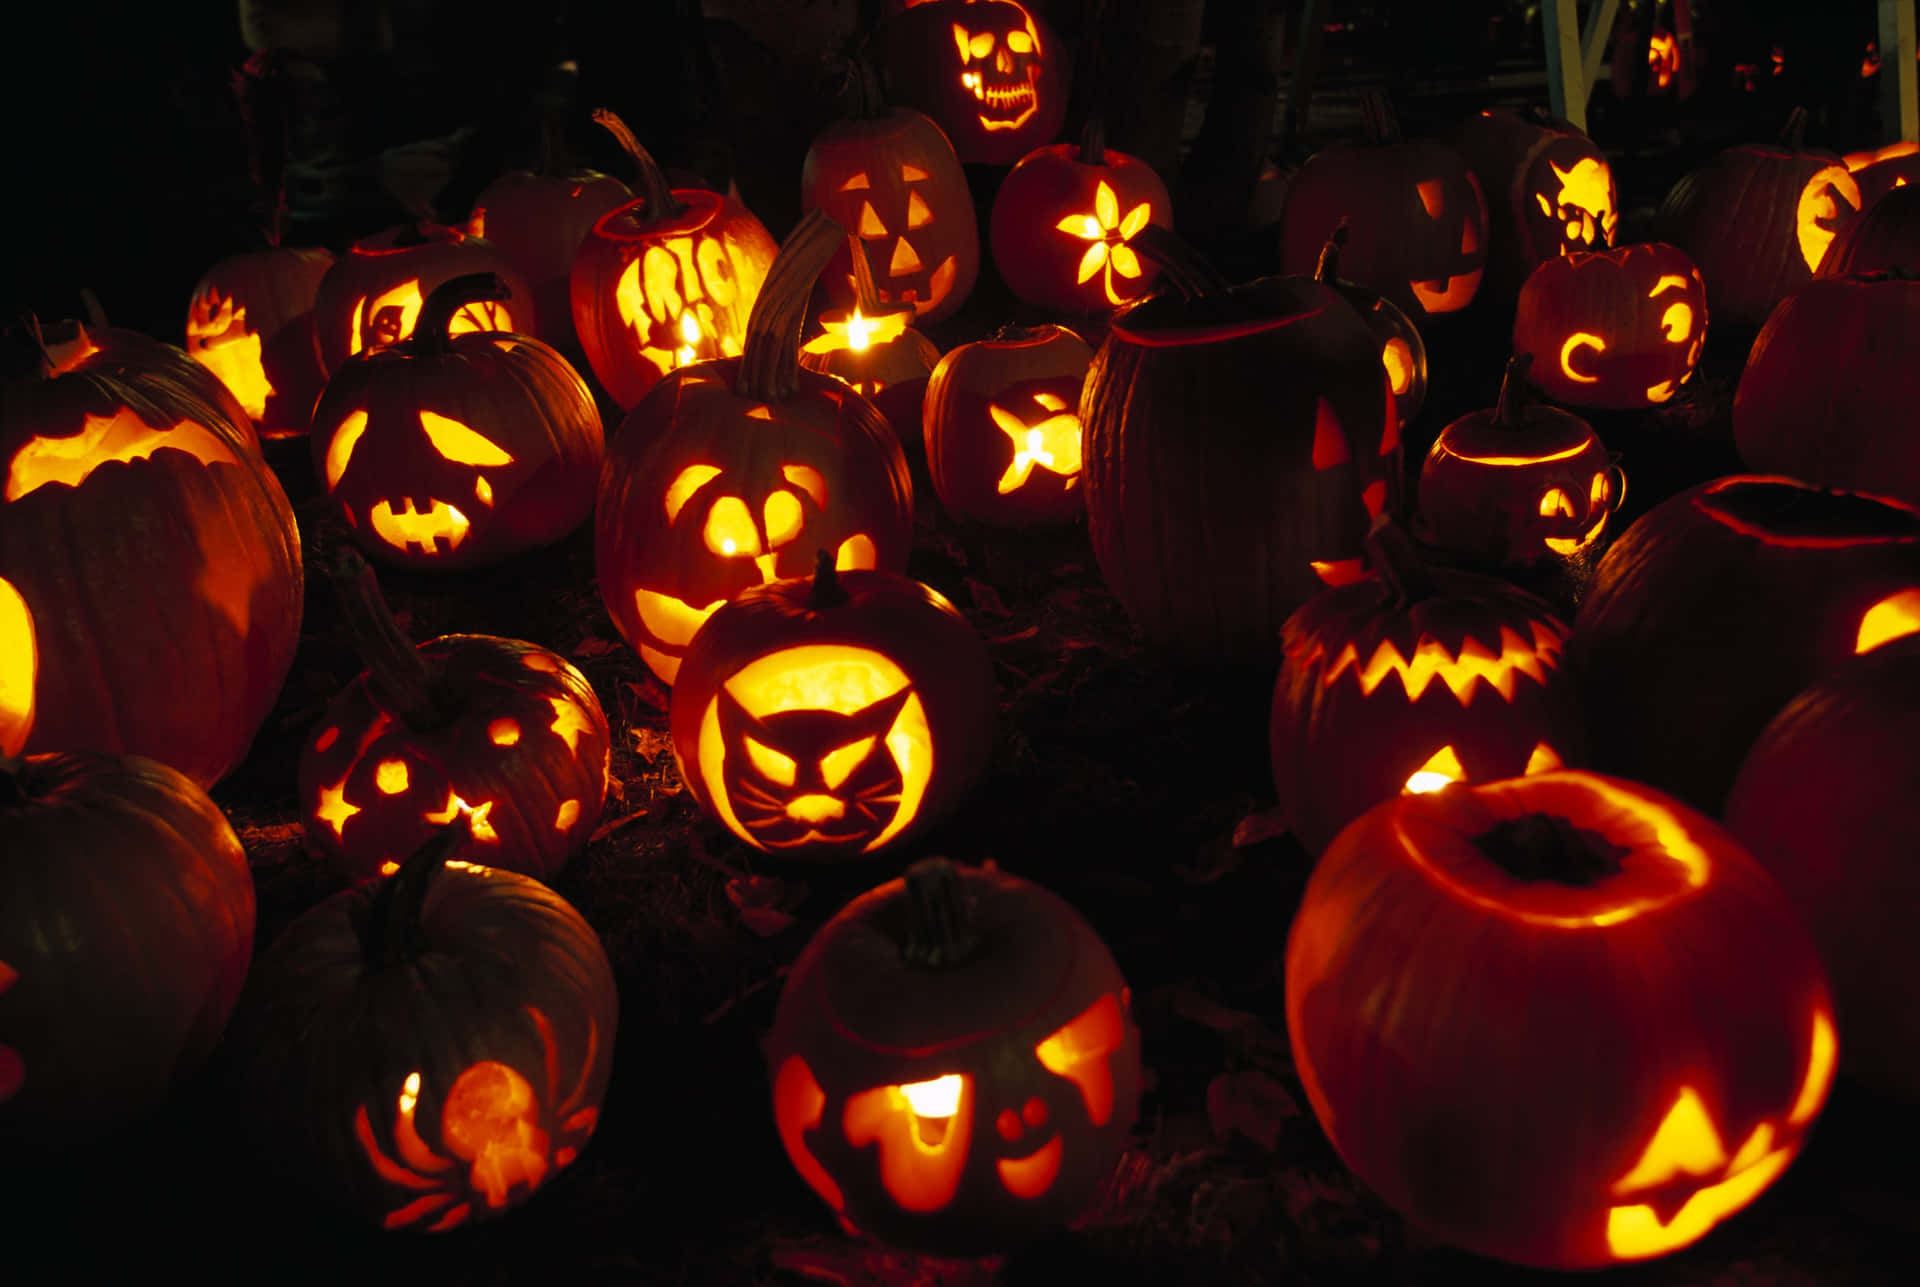 Bringemit Einem Jack-o'-lantern Das Gruselige In Deine Halloweenfeierlichkeiten!